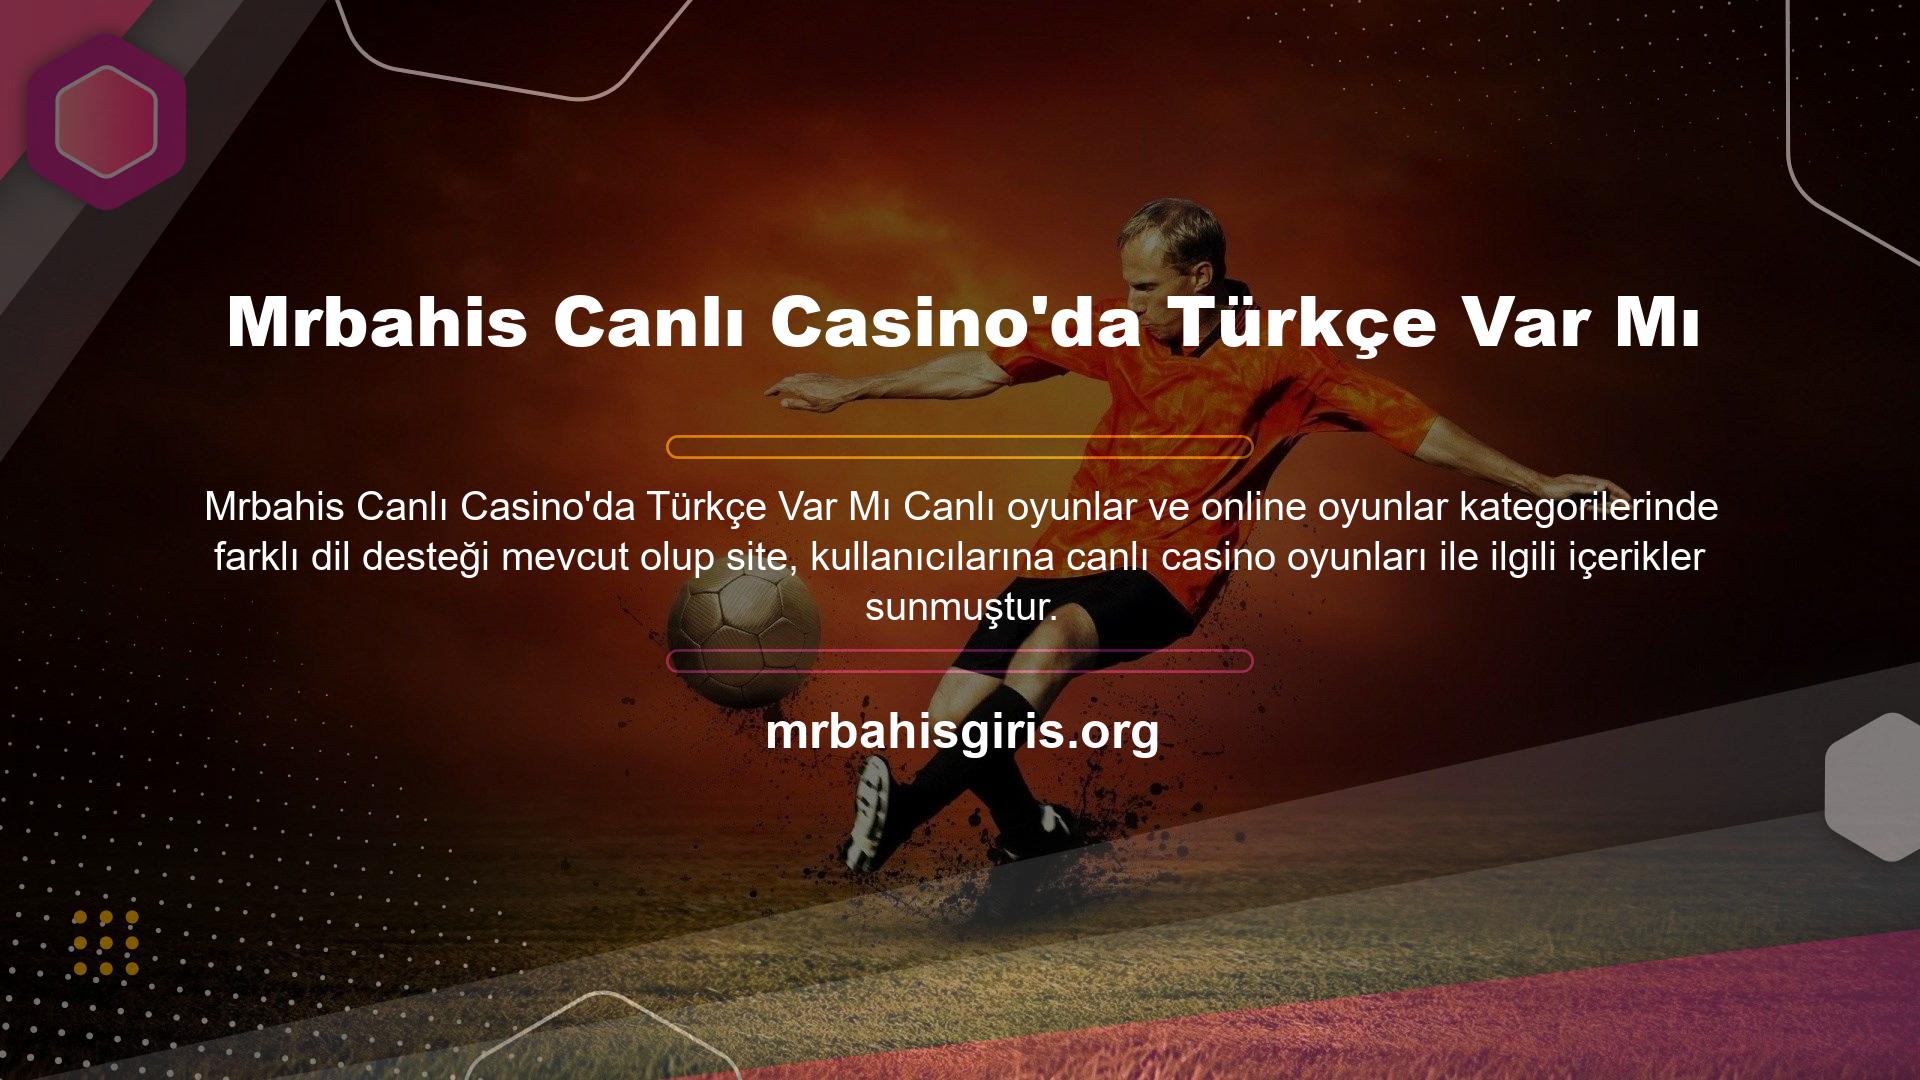 İngiliz canlı casino alternatiflerinin yanı sıra Türk canlı casino alternatifleri de gündemde